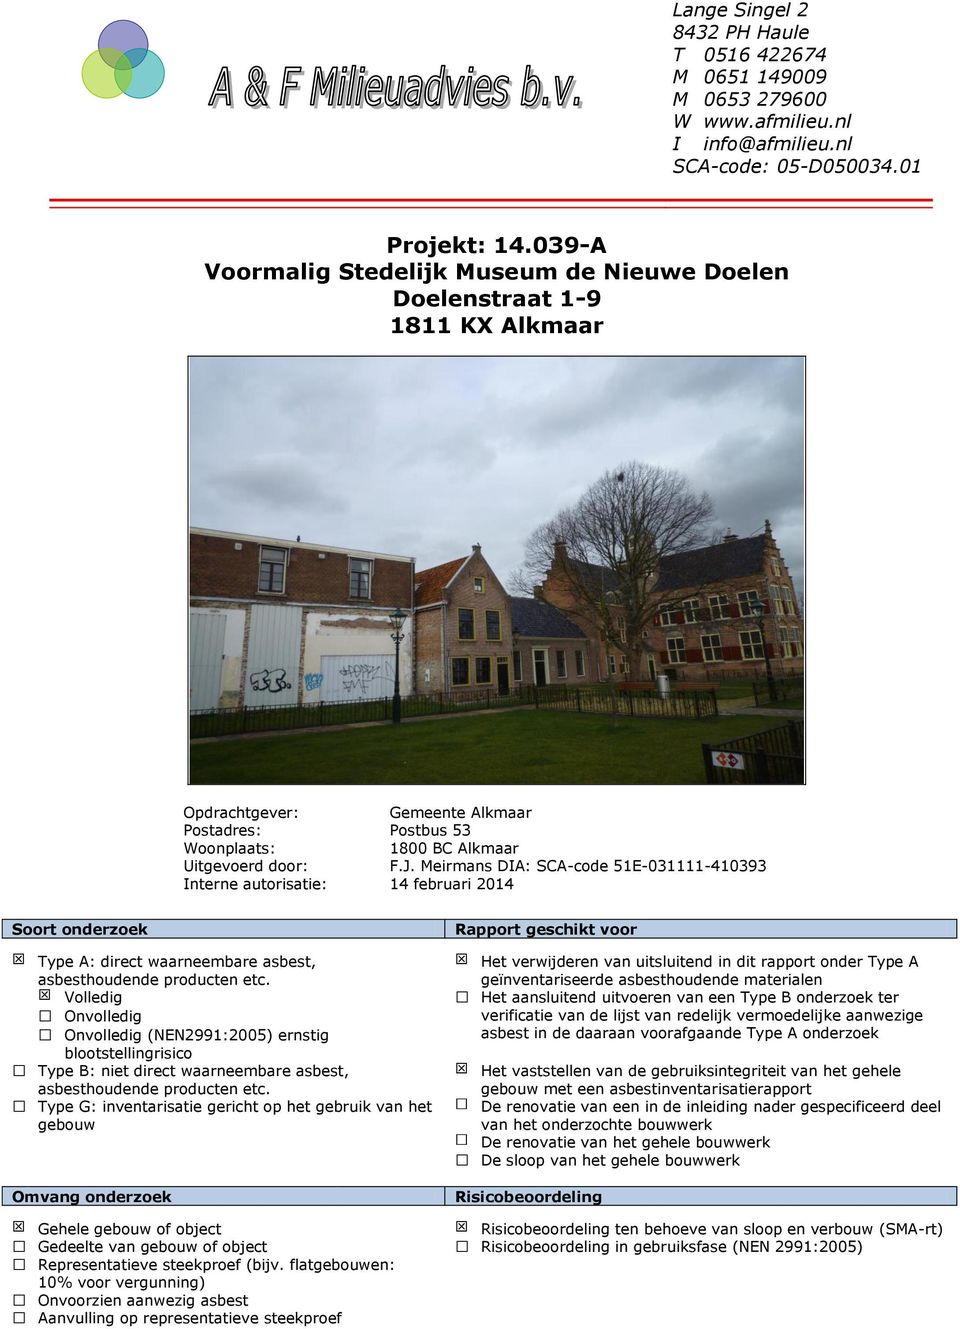 Meirmans DIA: SCA-code 51E-031111-410393 Interne autorisatie: 14 februari 2014 Soort onderzoek Type A: direct waarneembare asbest, asbesthoudende producten etc.